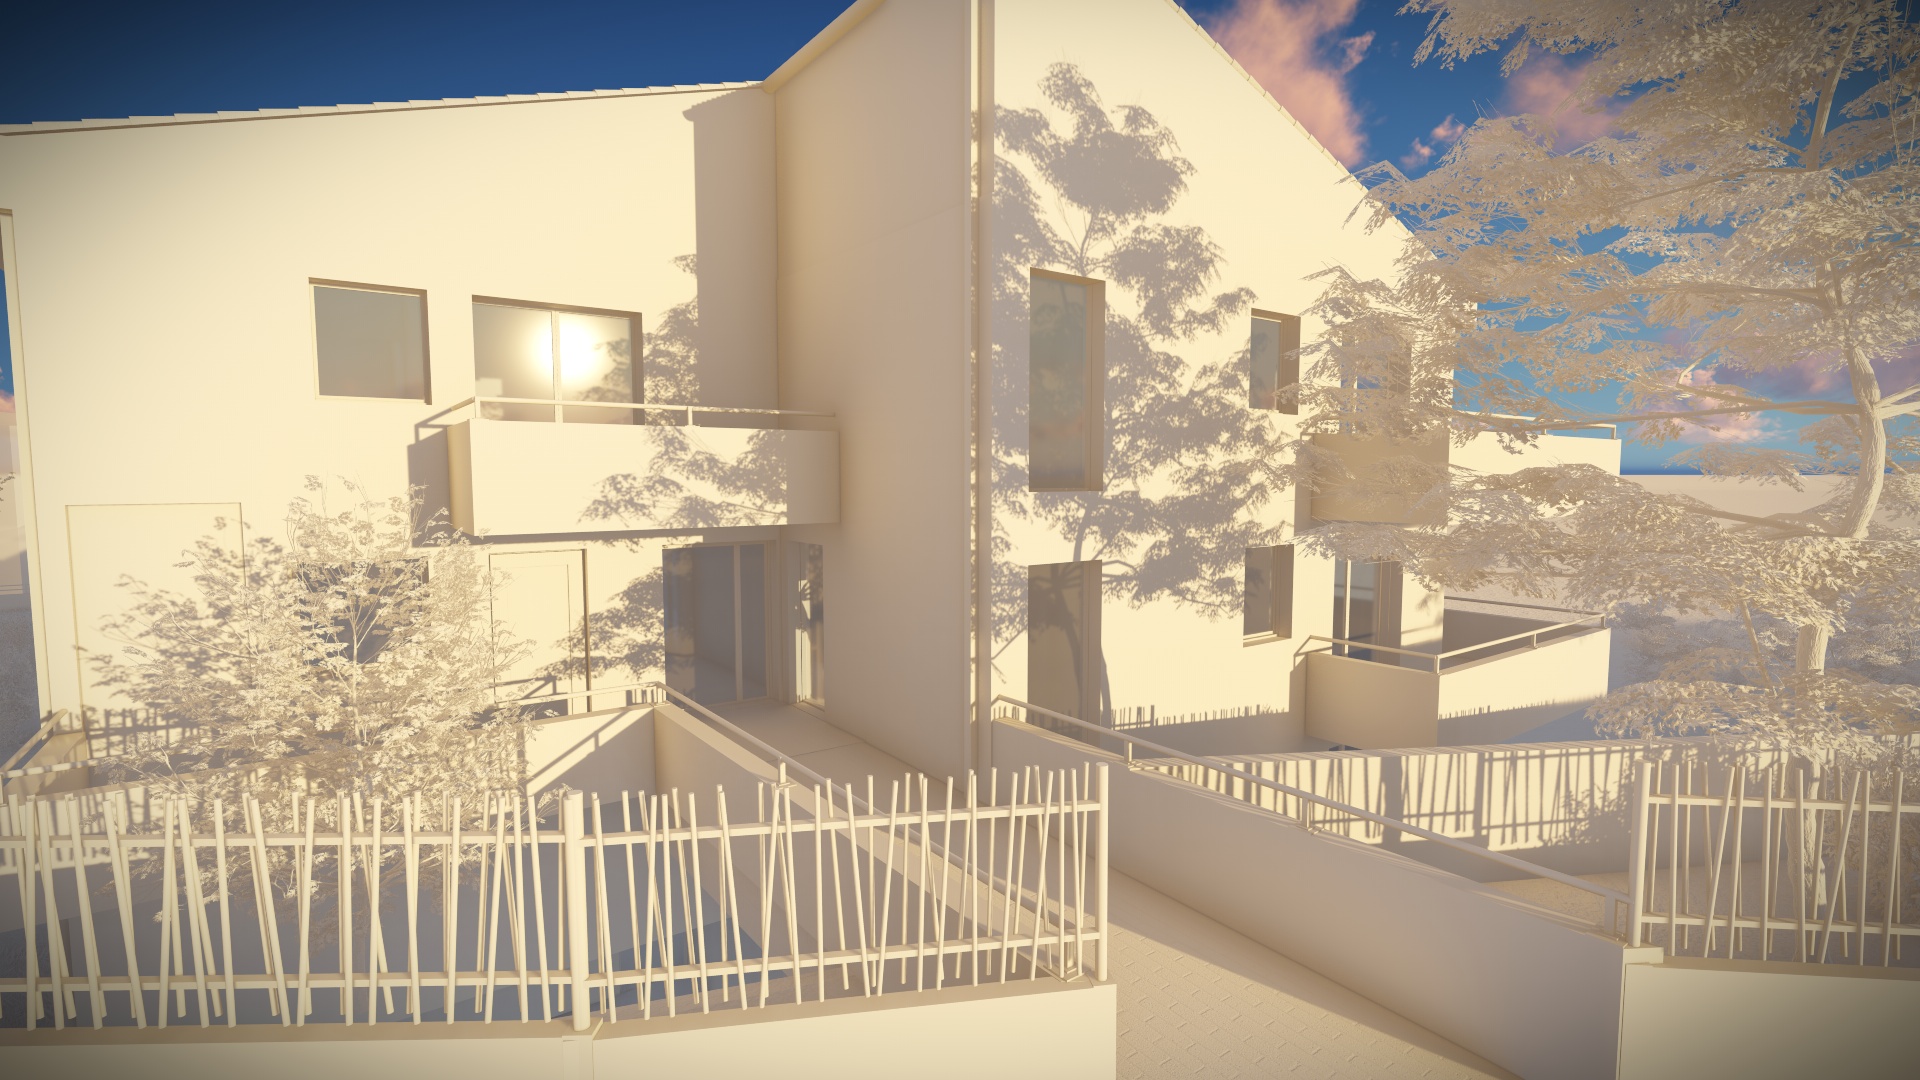 Bleu Horizon - Sogima - Immobilier à La Ciotat - Animation 3d